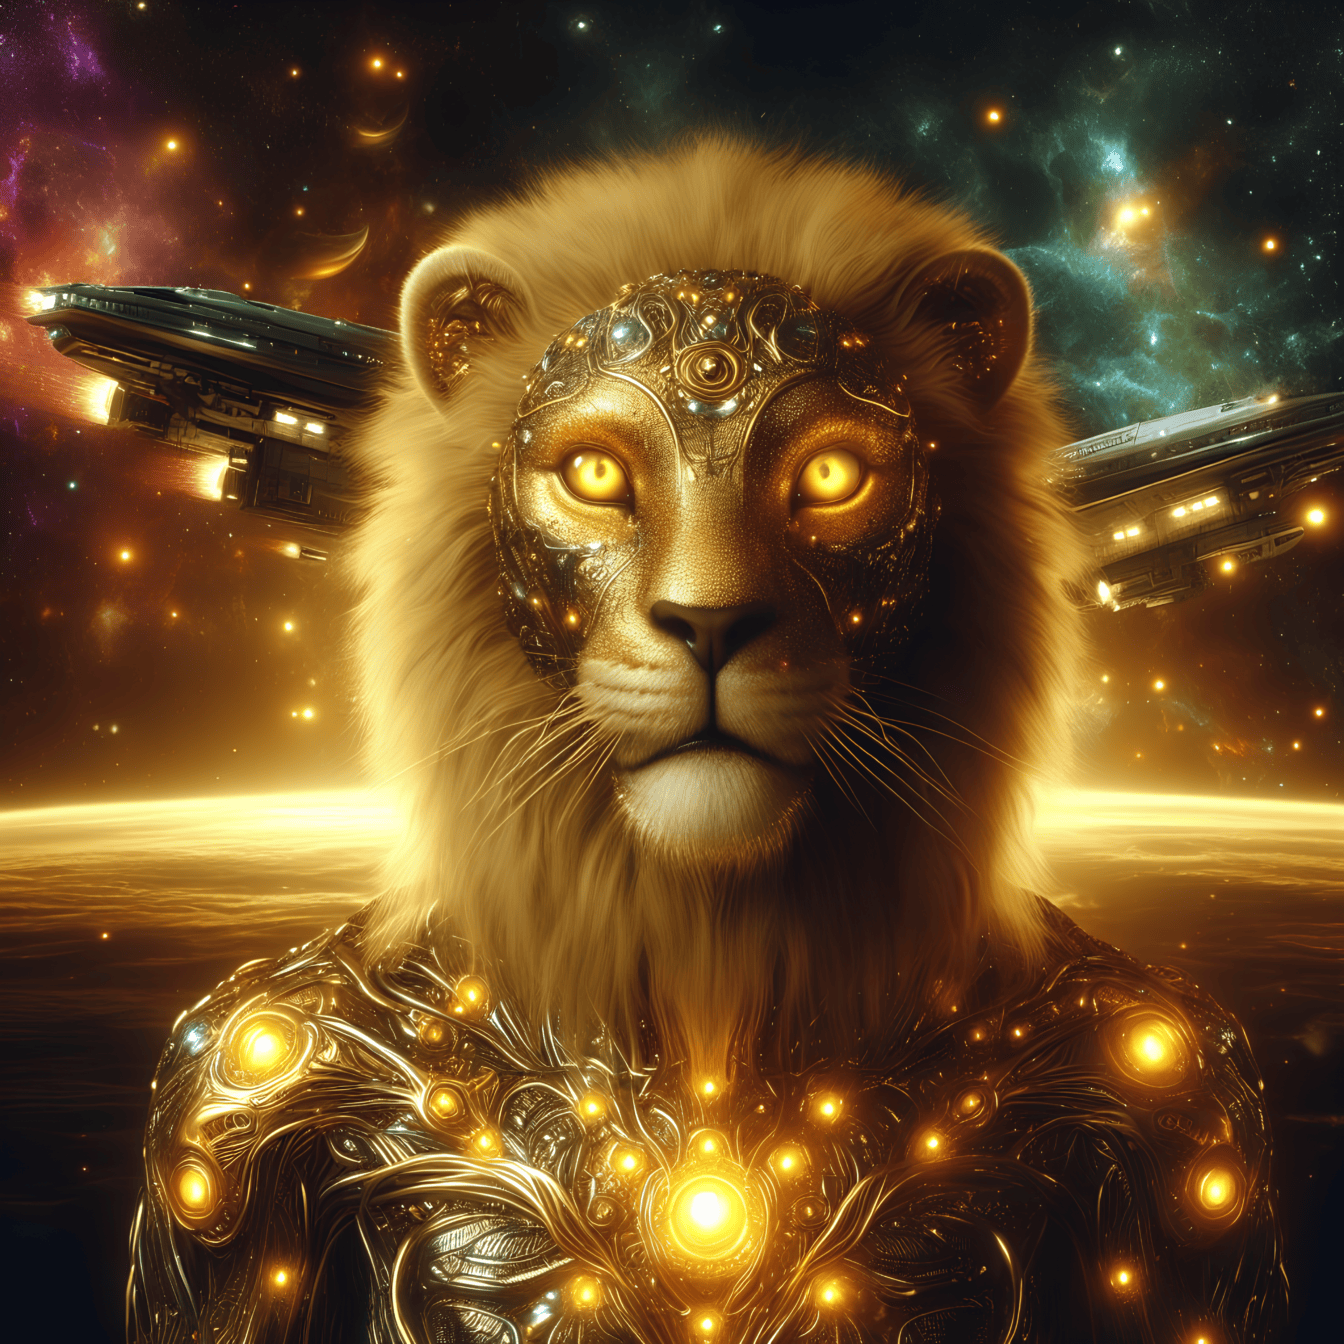 Portræt af en gylden guddom, en løve-cyborg alien i glødende rustning med rumfartøjer i baggrunden